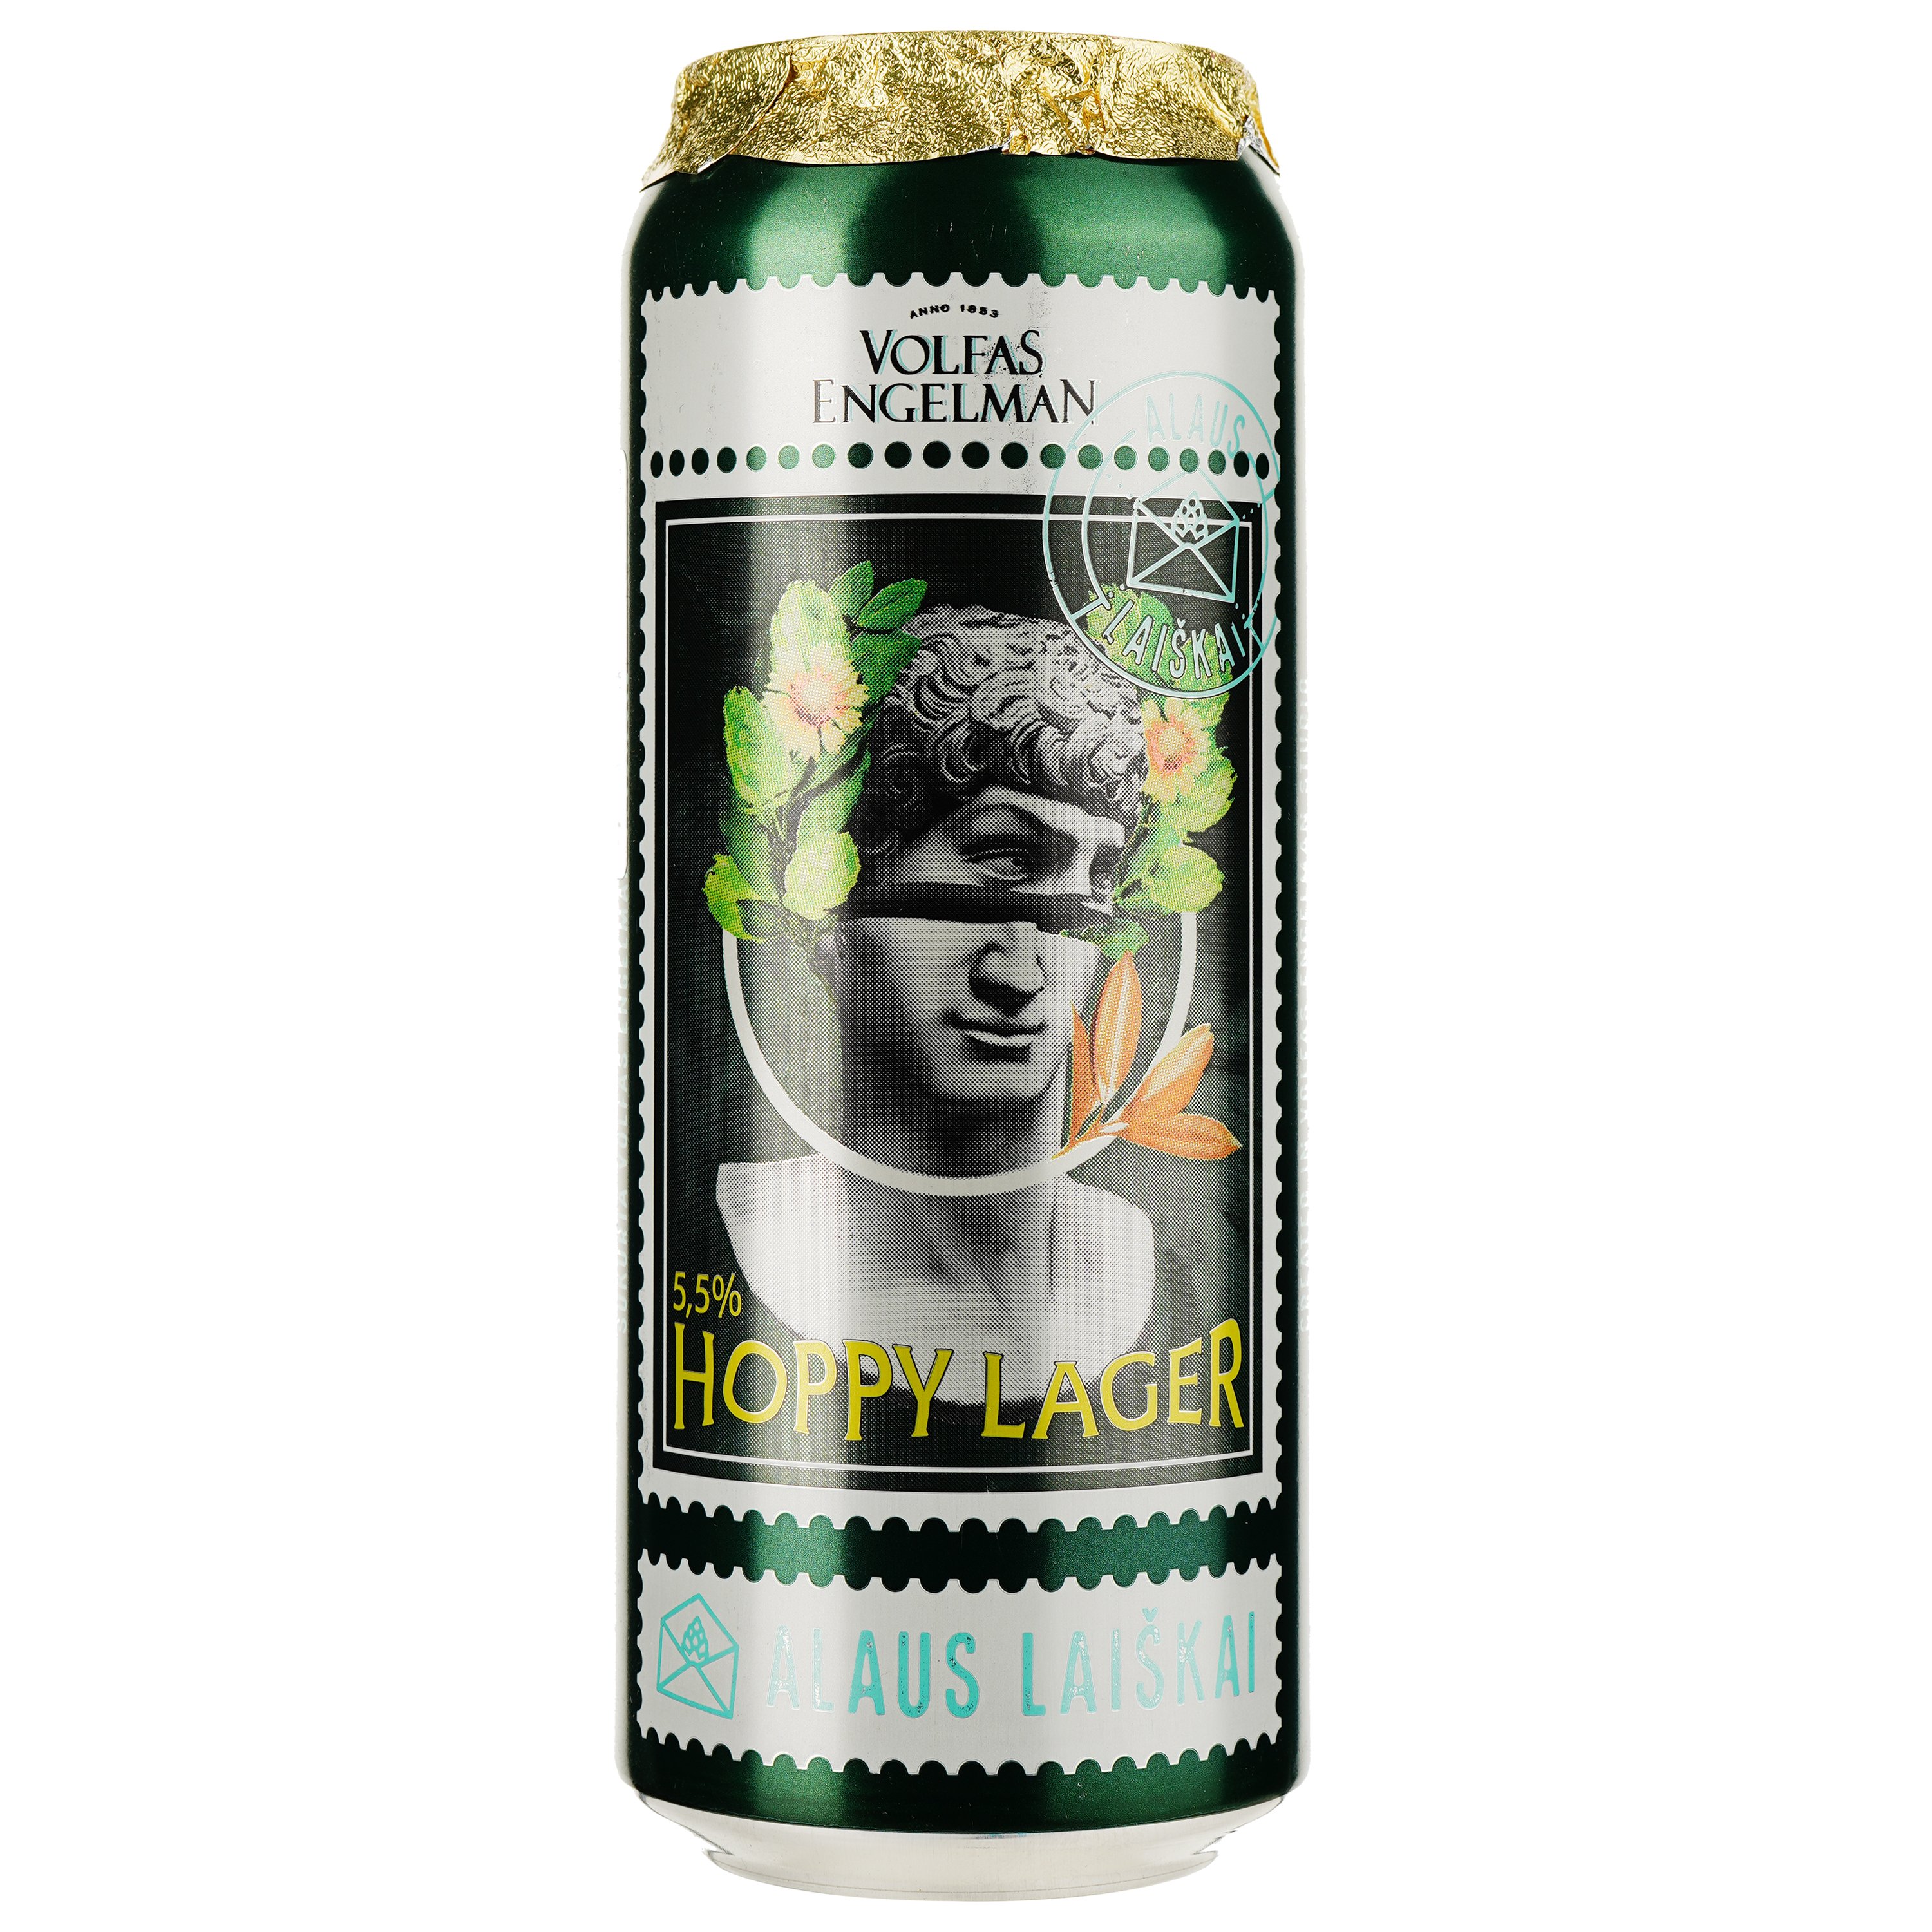 Пиво Volfas Engelman Hoppy lager, светлое, ж/б, 5,5%, 0,5 л - фото 1